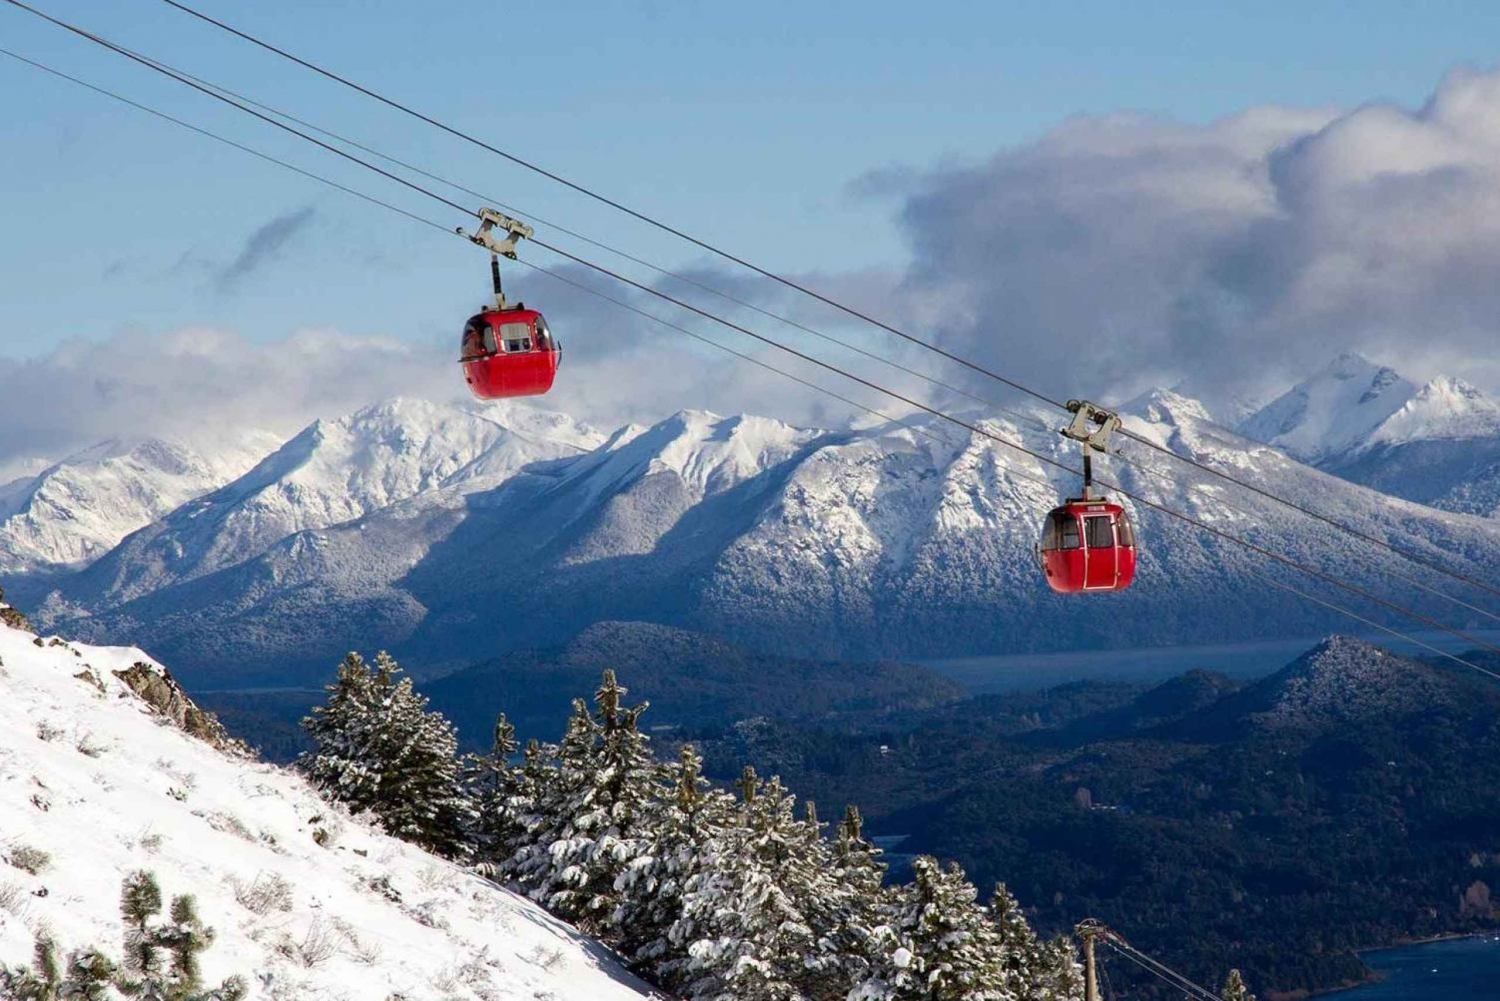 Bariloche: Cerro Otto Cable Car